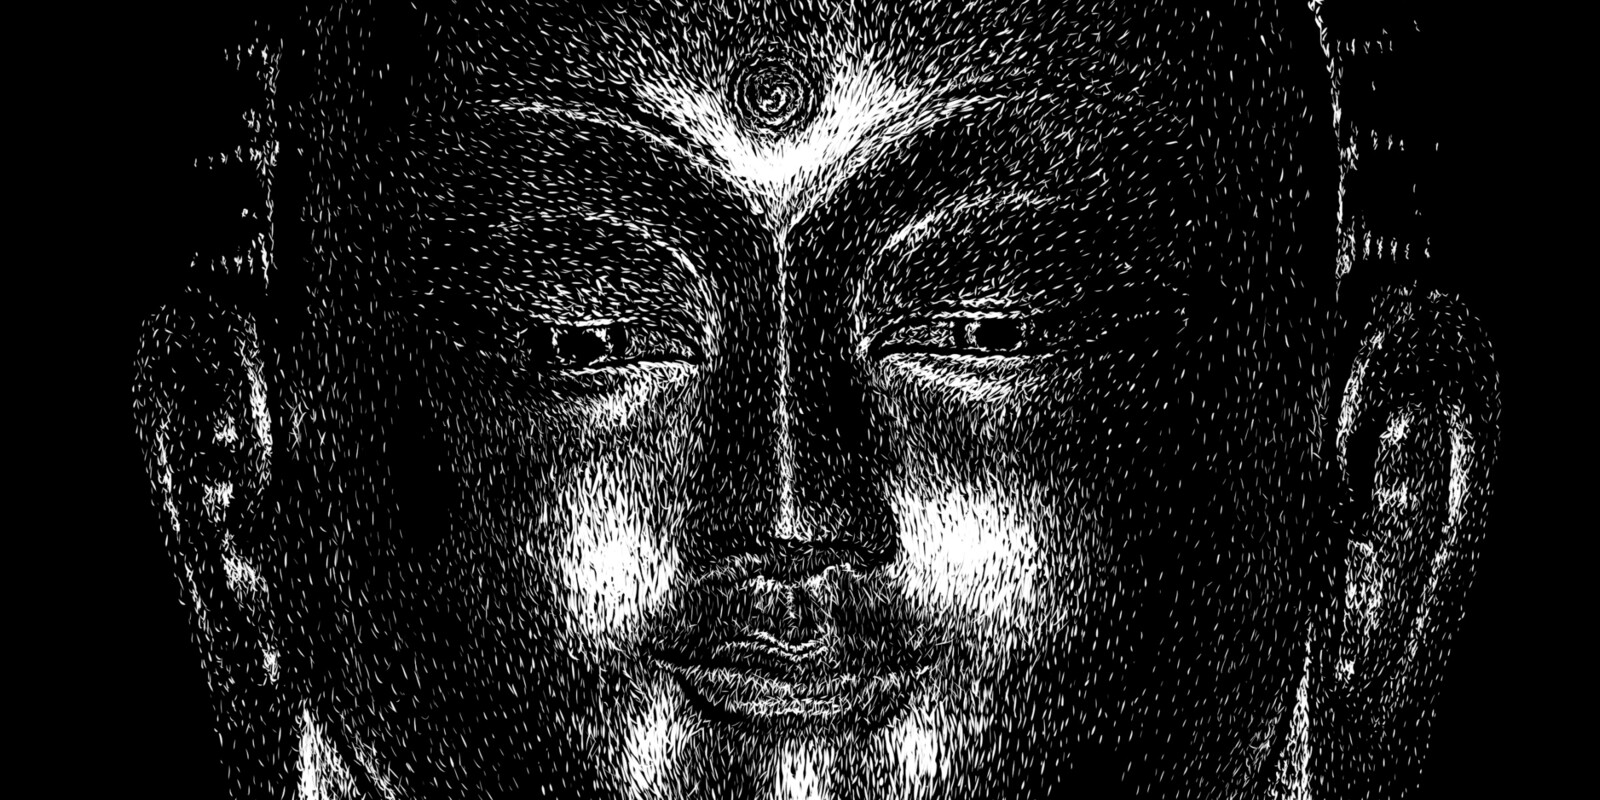 Buddha, face close-up
Digital scratchboard, june 2019